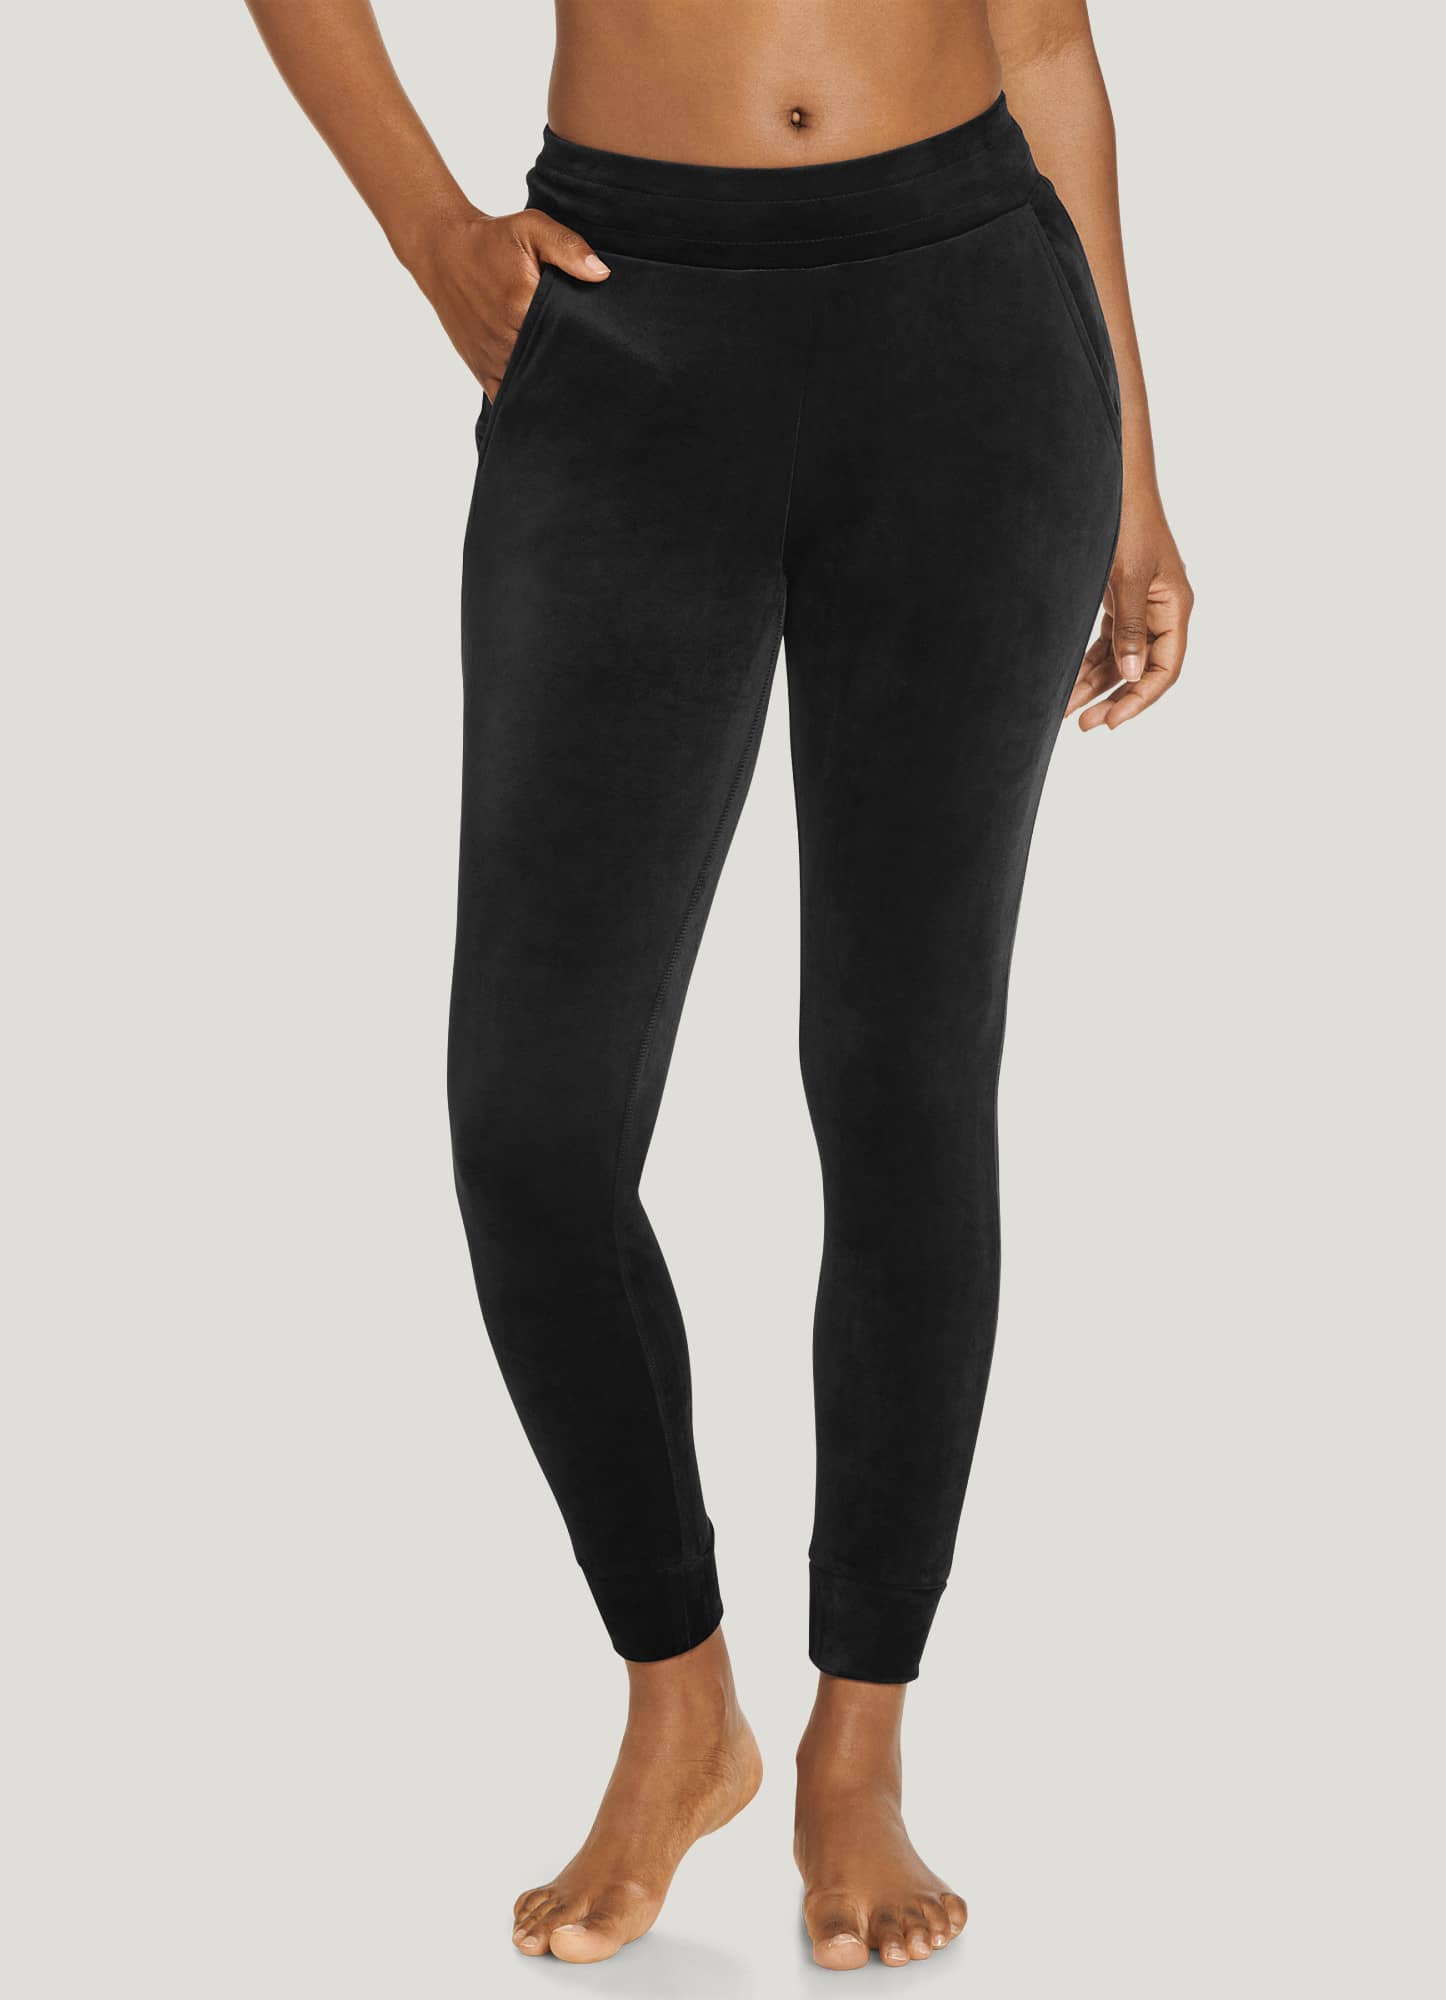 J Crew Women's Black Stretch velvet leggings size small